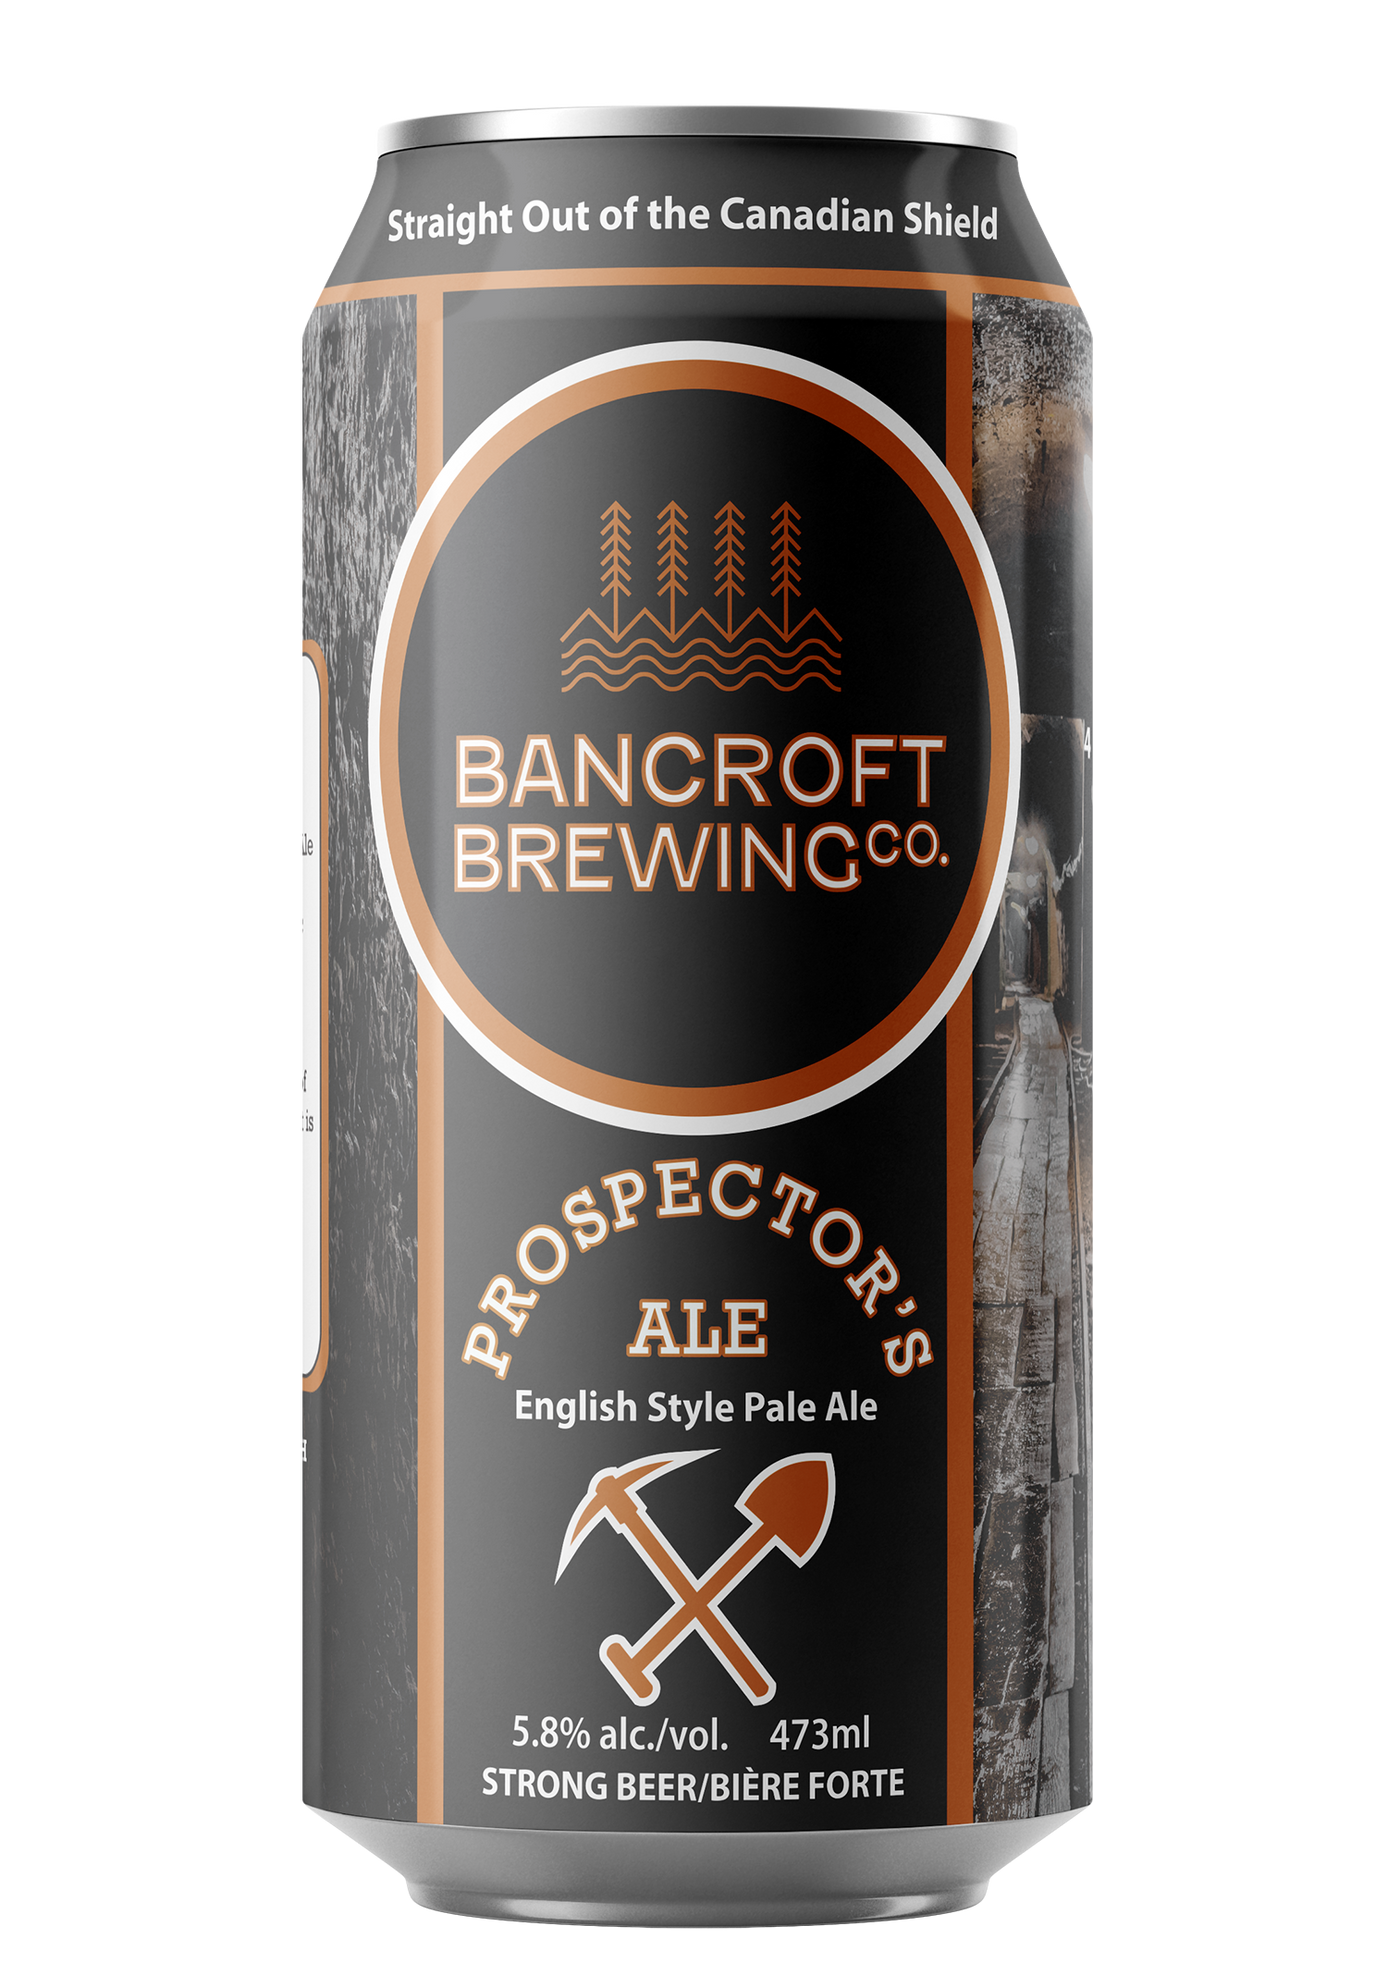 Prospector's Ale